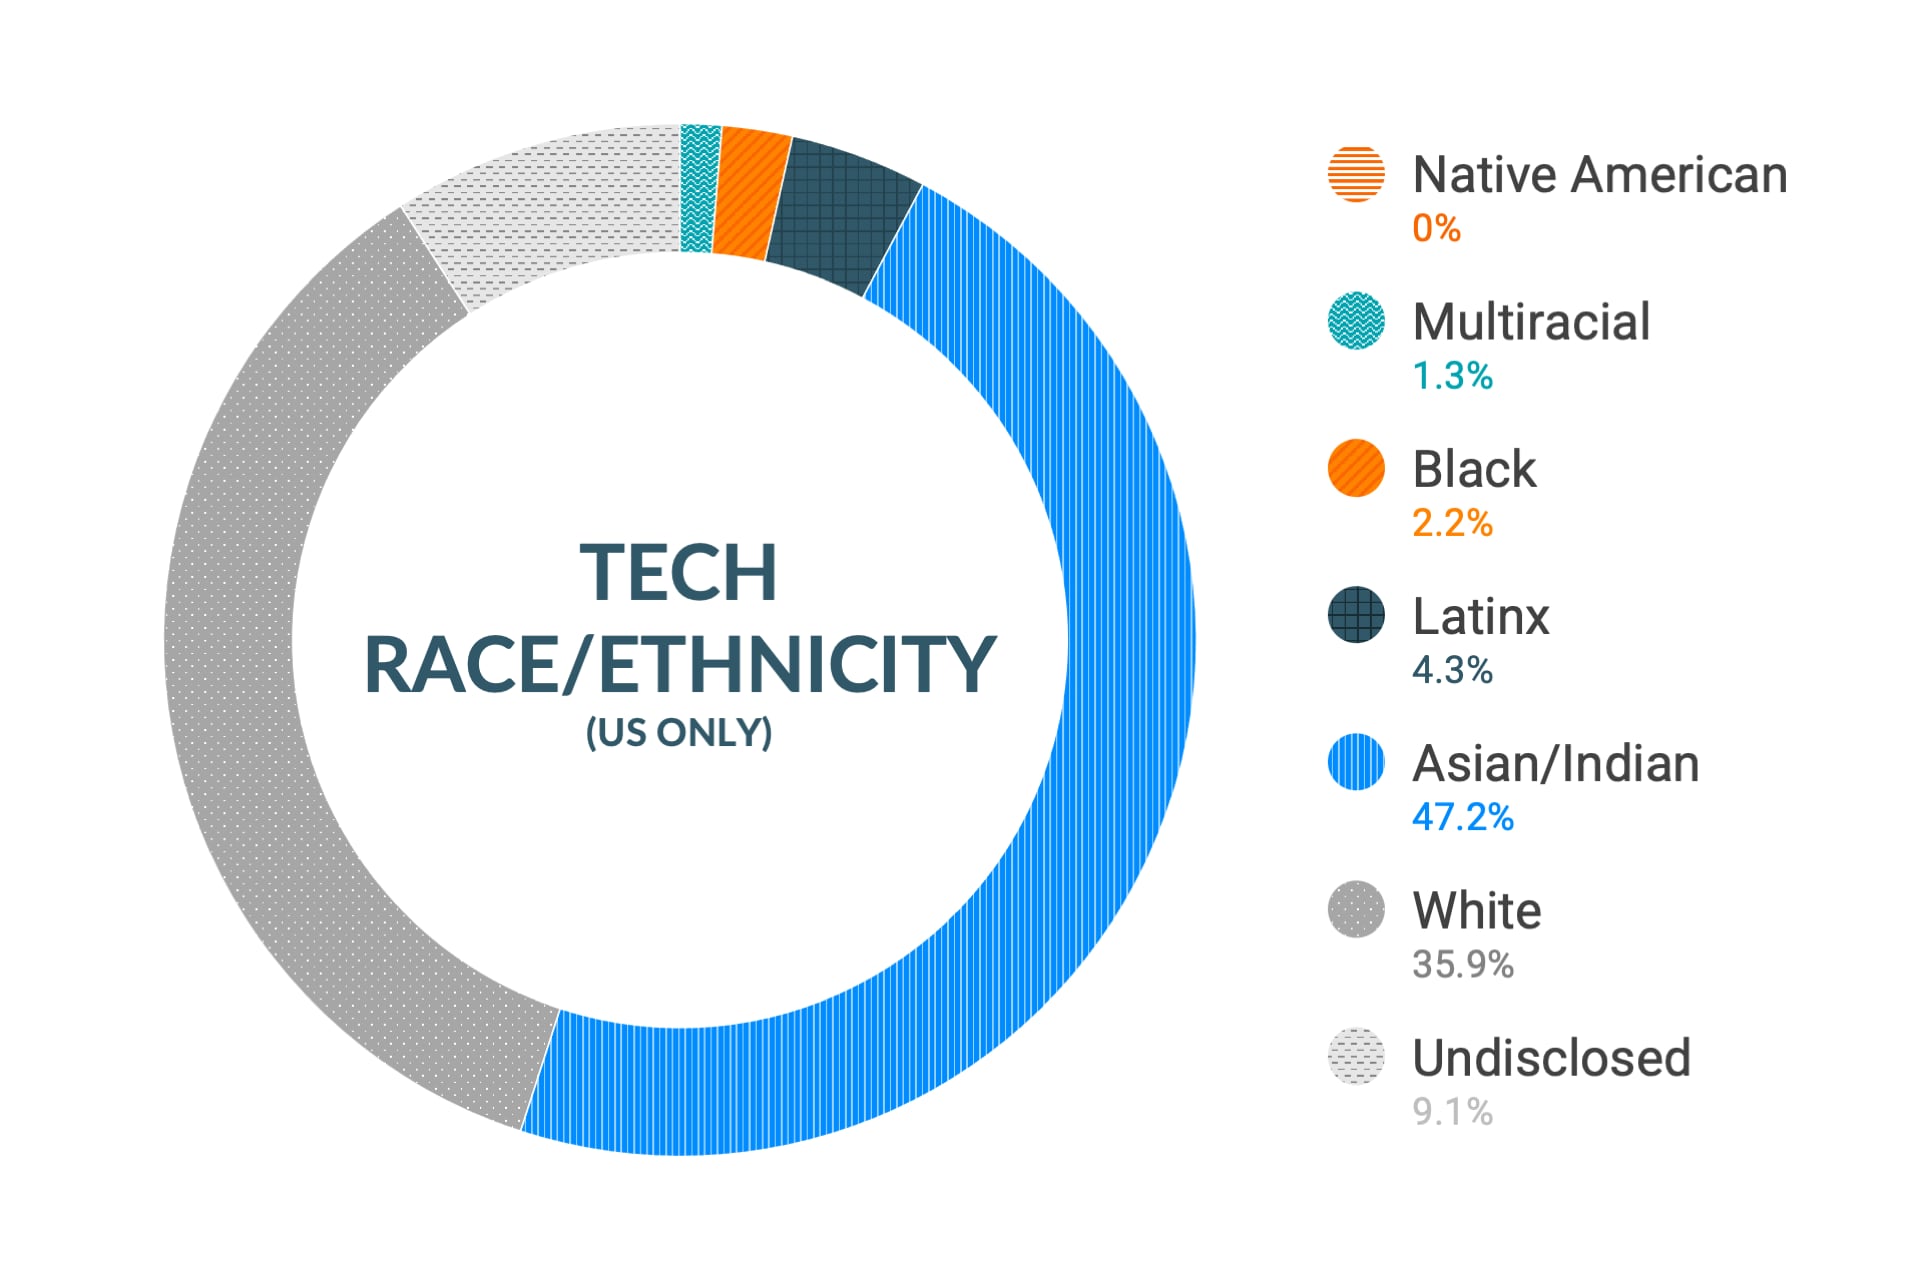 미국 지역 기술 및 엔지니어링 역할 내 인종 및 민족에 대한 Cloudera의 다양성 및 포용력 데이터: 아메리카 원주민 0%, 다인종 1.8%, 흑인 2.0%, 라틴계 3.7%, 아시아인 및 인도인 46.3%, 백인 36.1%, 비공개 10.1%